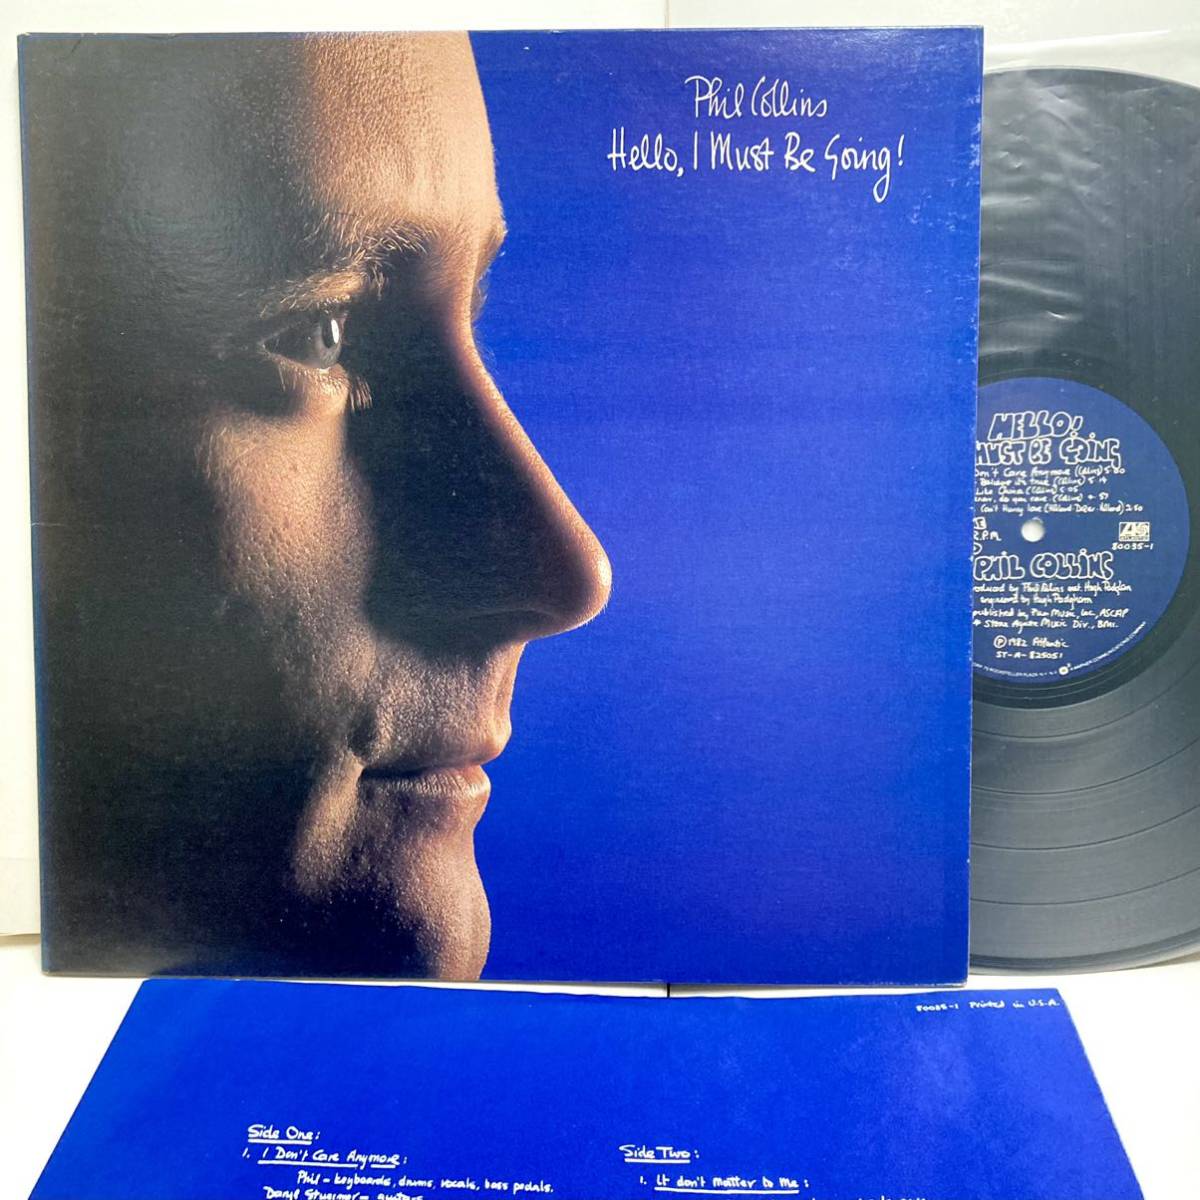 【美品 US盤】 Hello I Must Be Going ハロー・アイ・マスト・ビー・ゴーイング / Phil Collins フィル・コリンズ 【LPアナログレコード 】_画像1